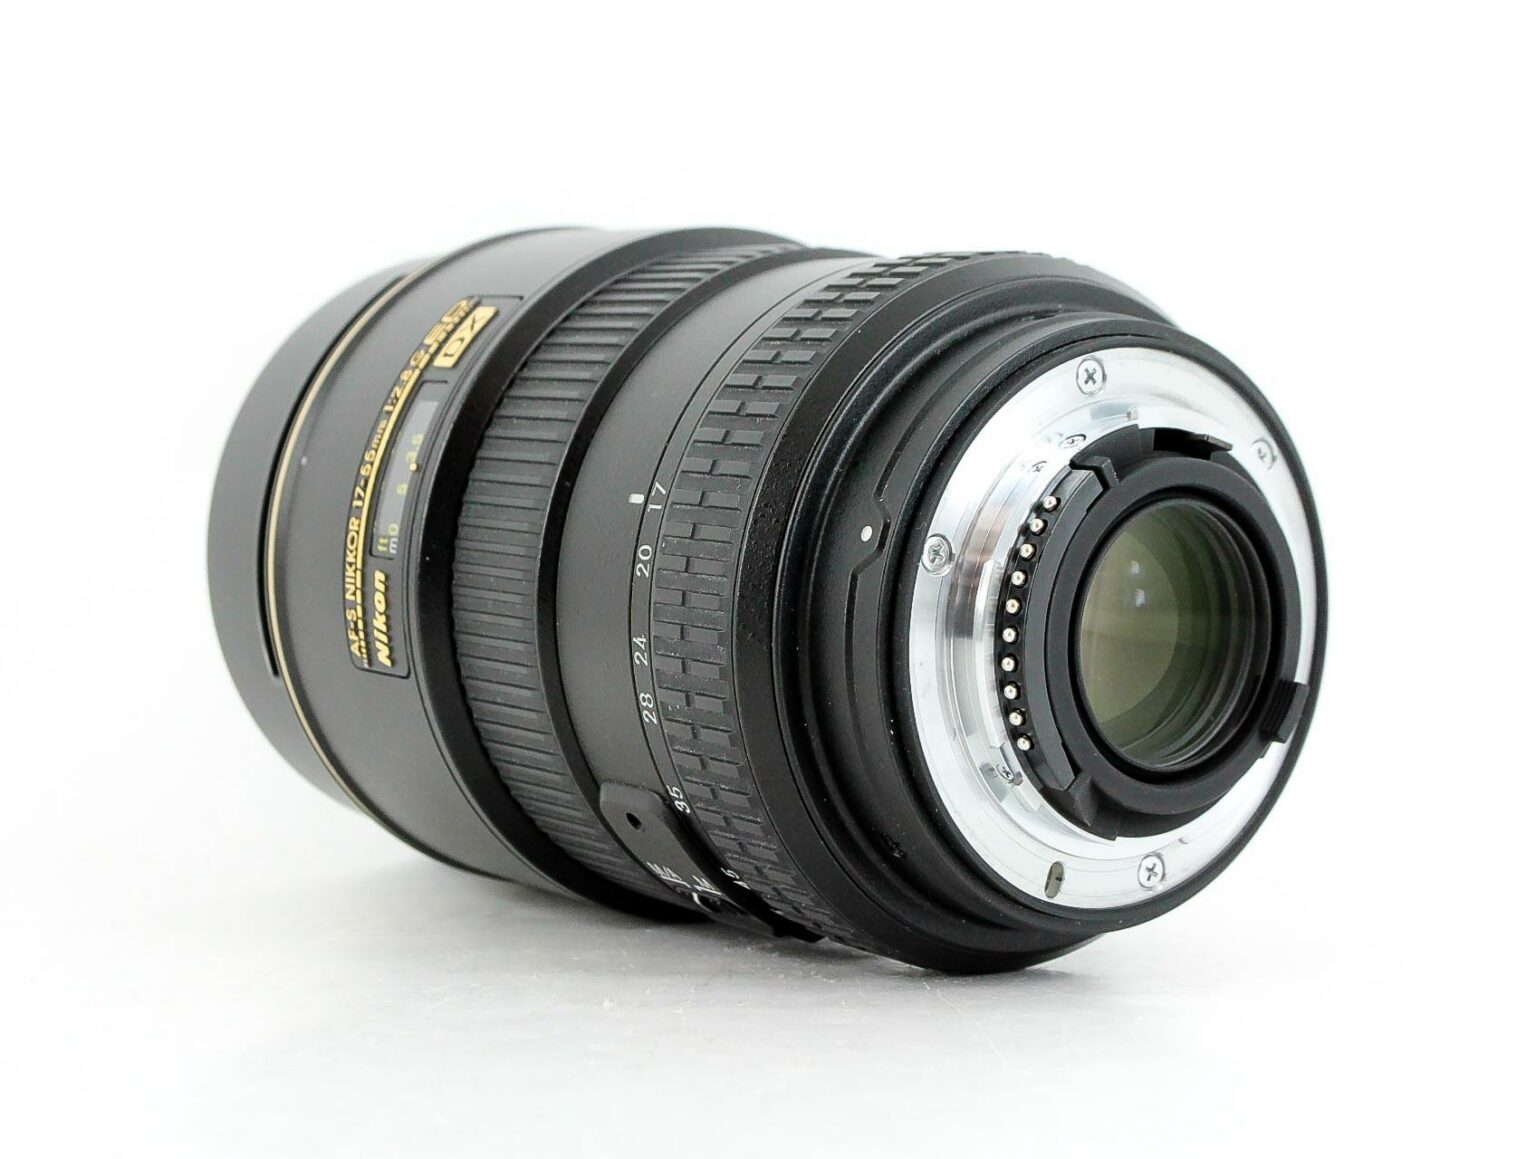 Nikon AF-S NIKKOR 17-55mm f/2.8G IF- DX ED Lens - Lenses and Cameras